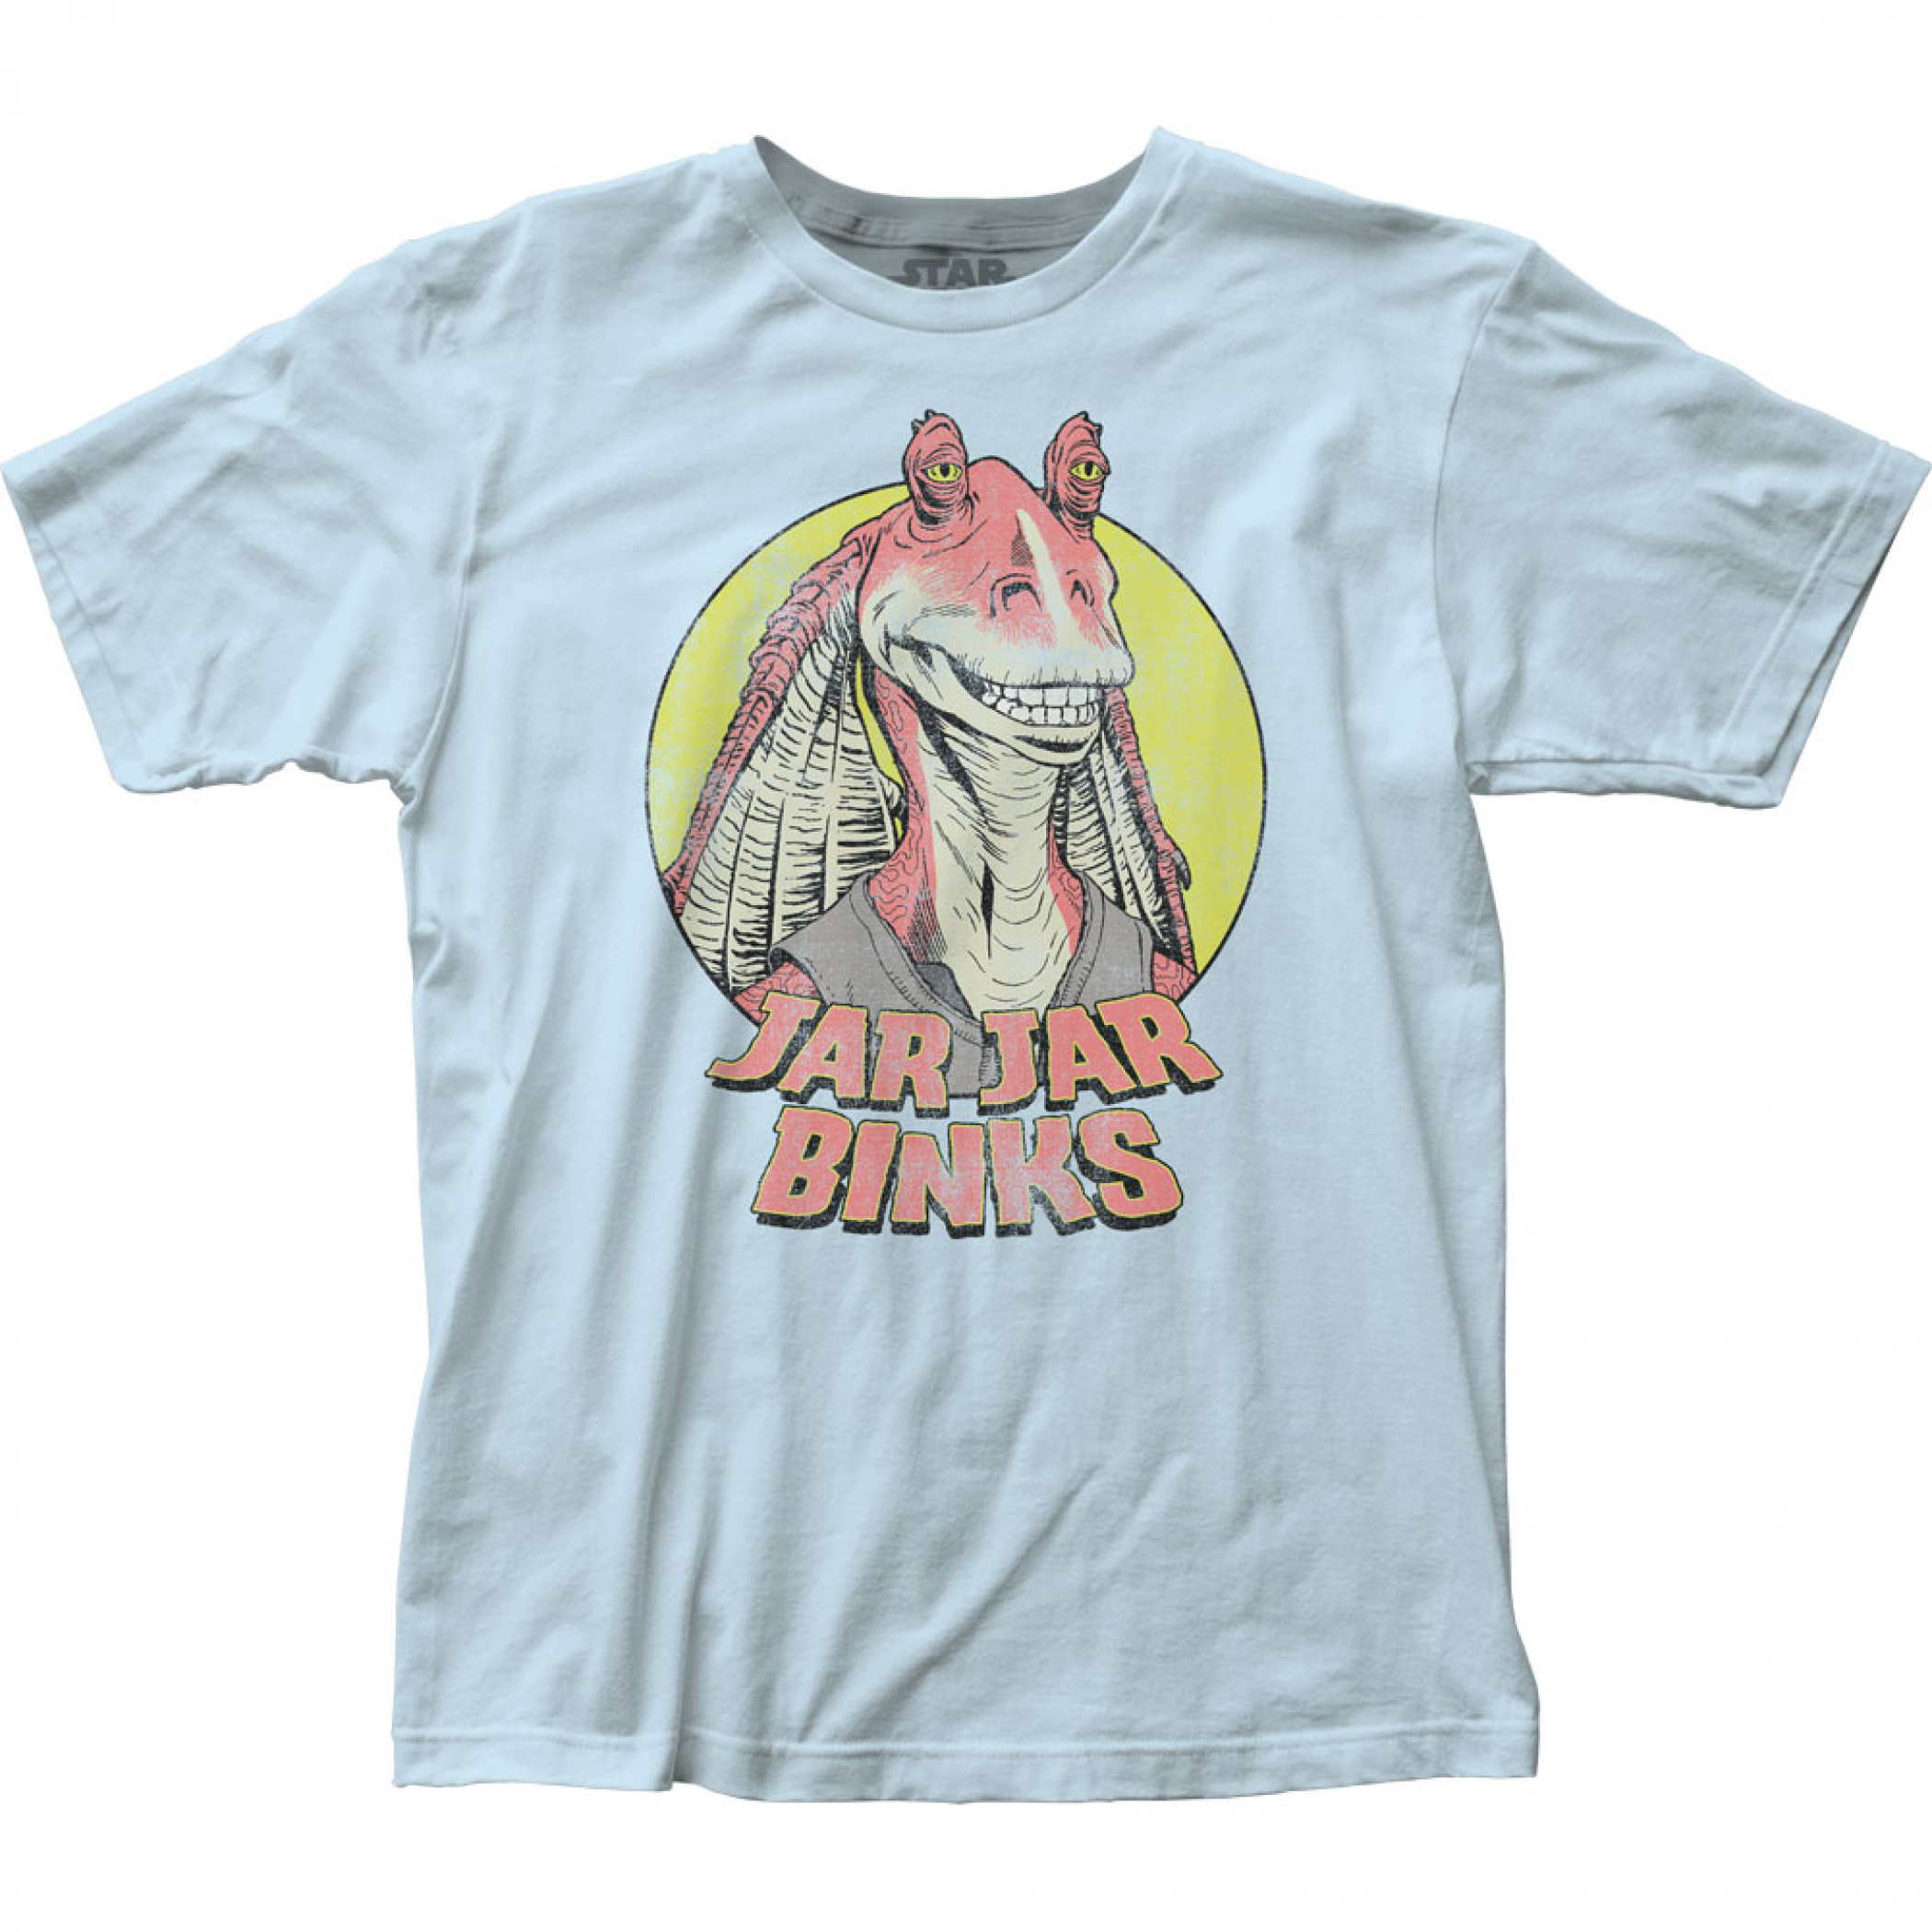 Star Wars Jar Jar Binks Profile T-Shirt